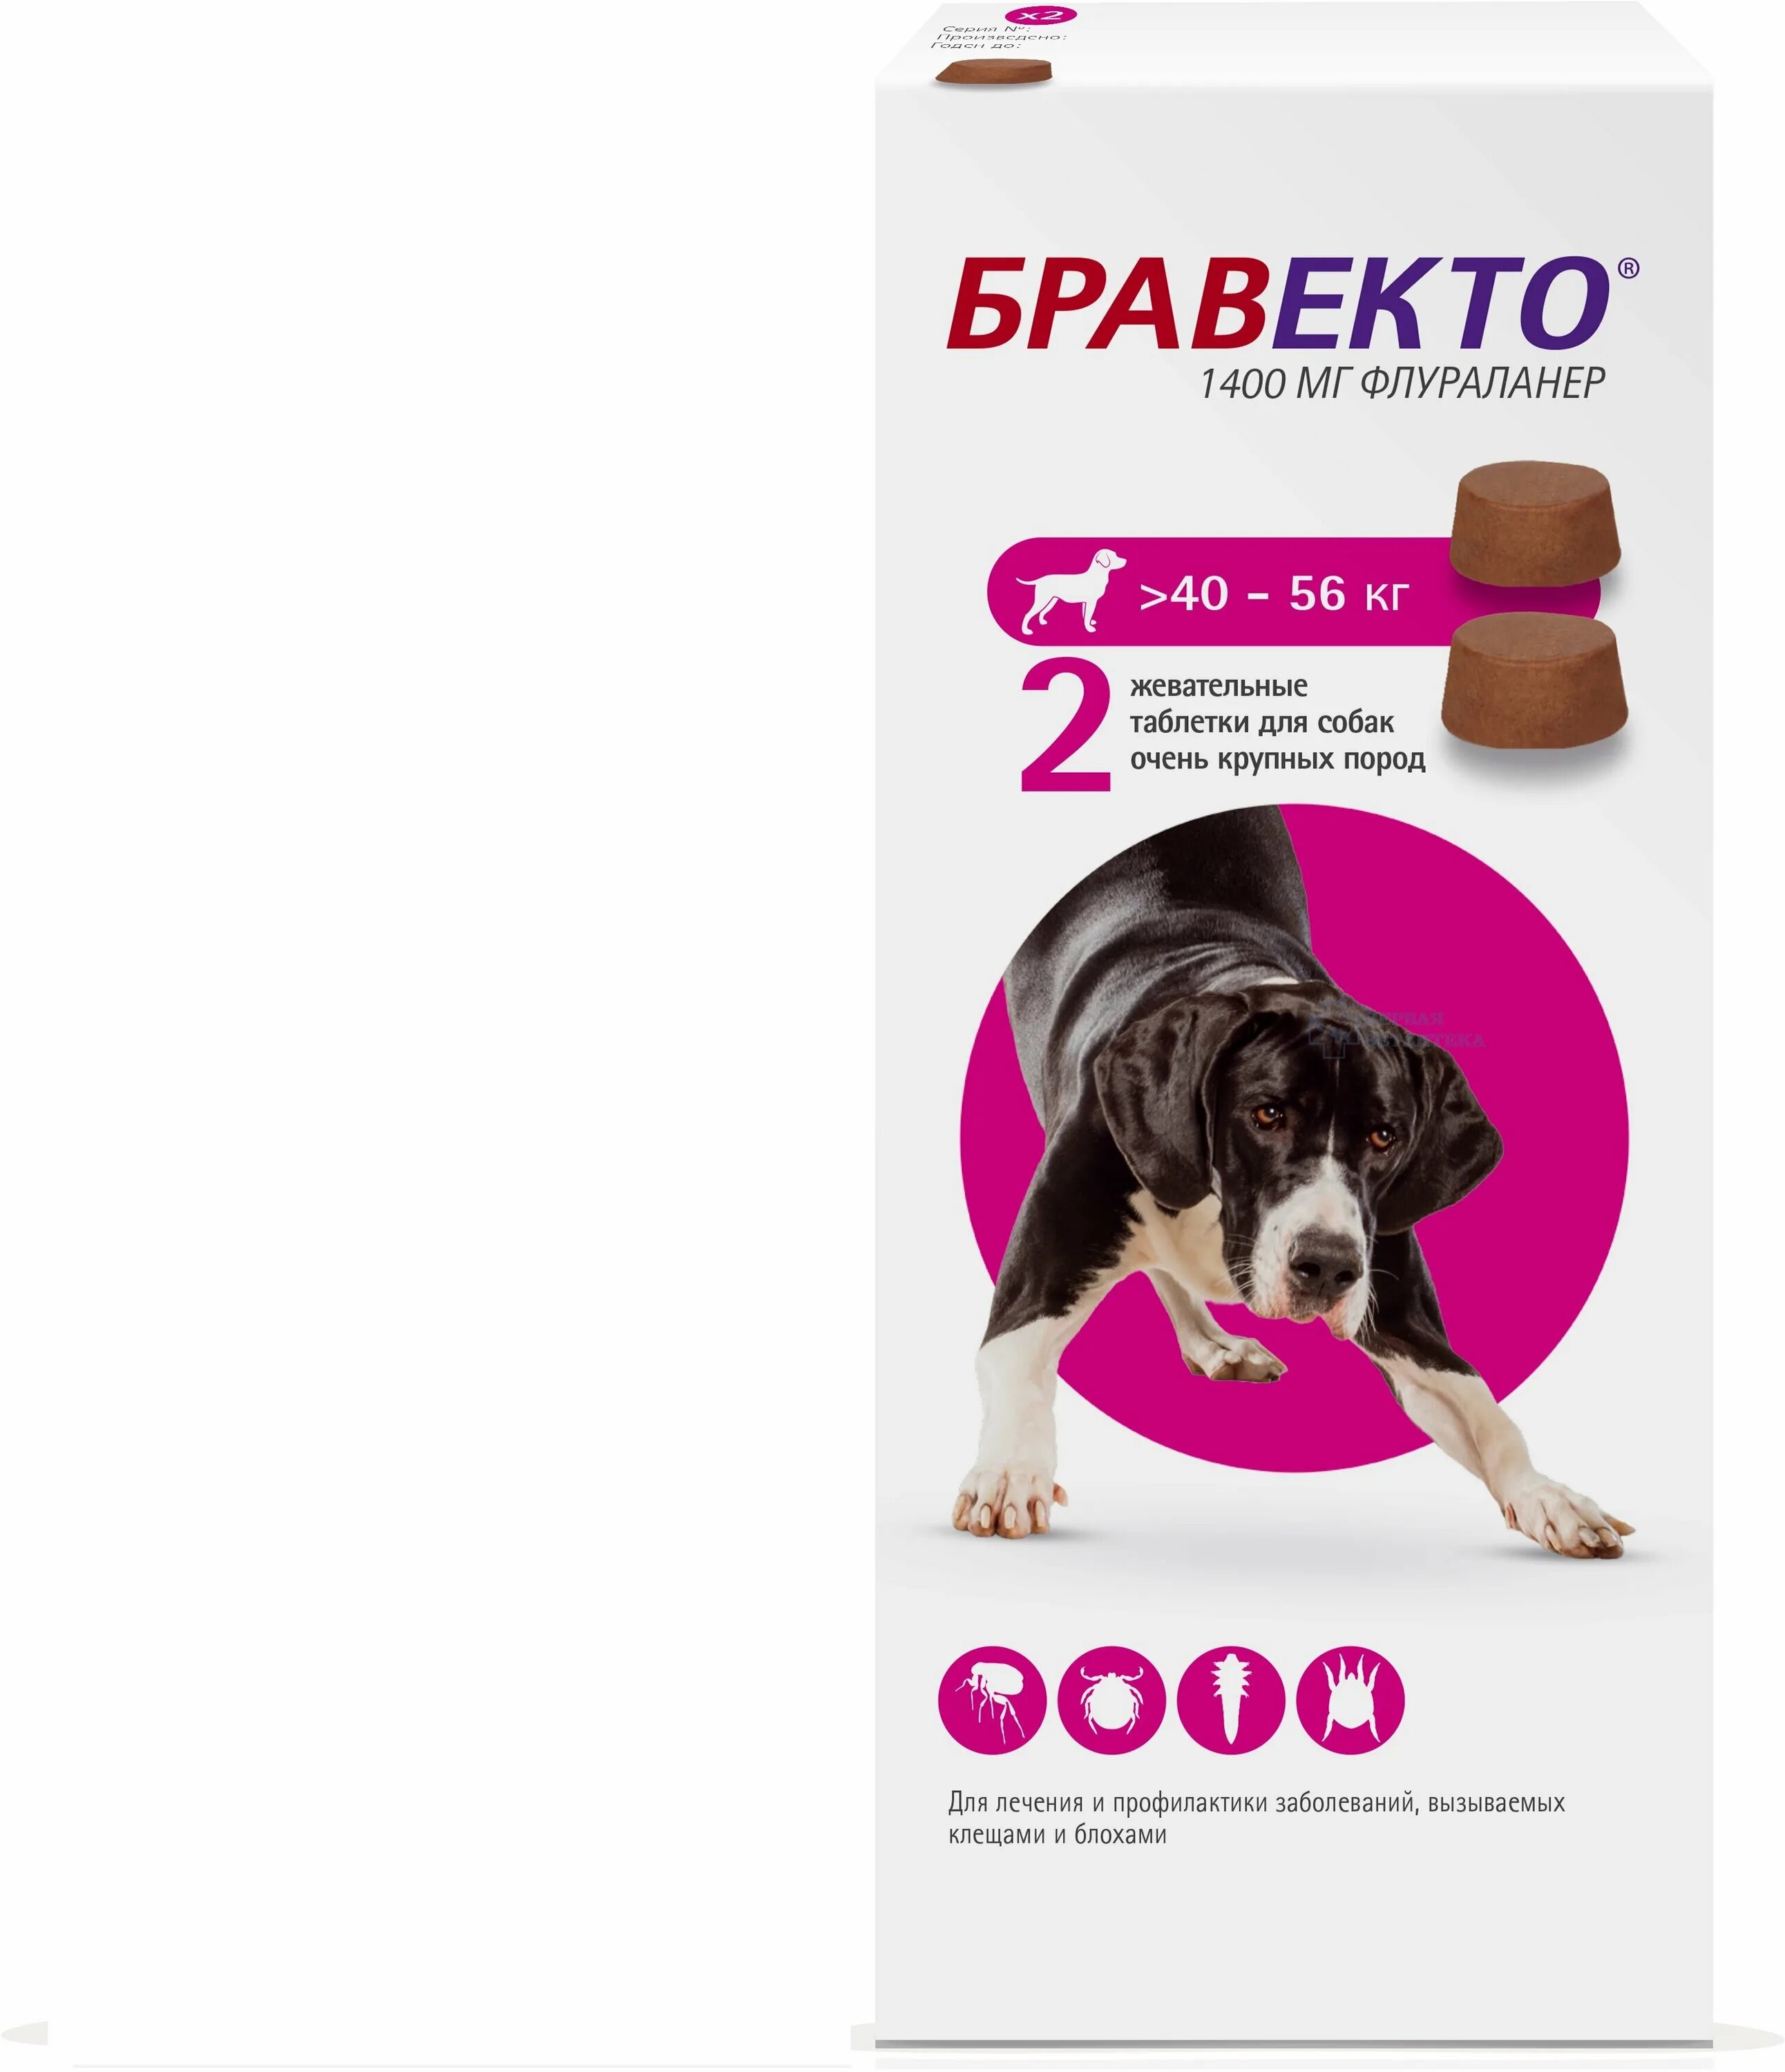 Две собаки бравекто. Бравекто таблетки для собак 40-56. Таблетка Бравекто для собак 20-40 2 таблетка. Бравекто (MSD animal Health) таблетки от блох и клещей для собак 40-56 кг. Бравекто 1400 мг для собак.